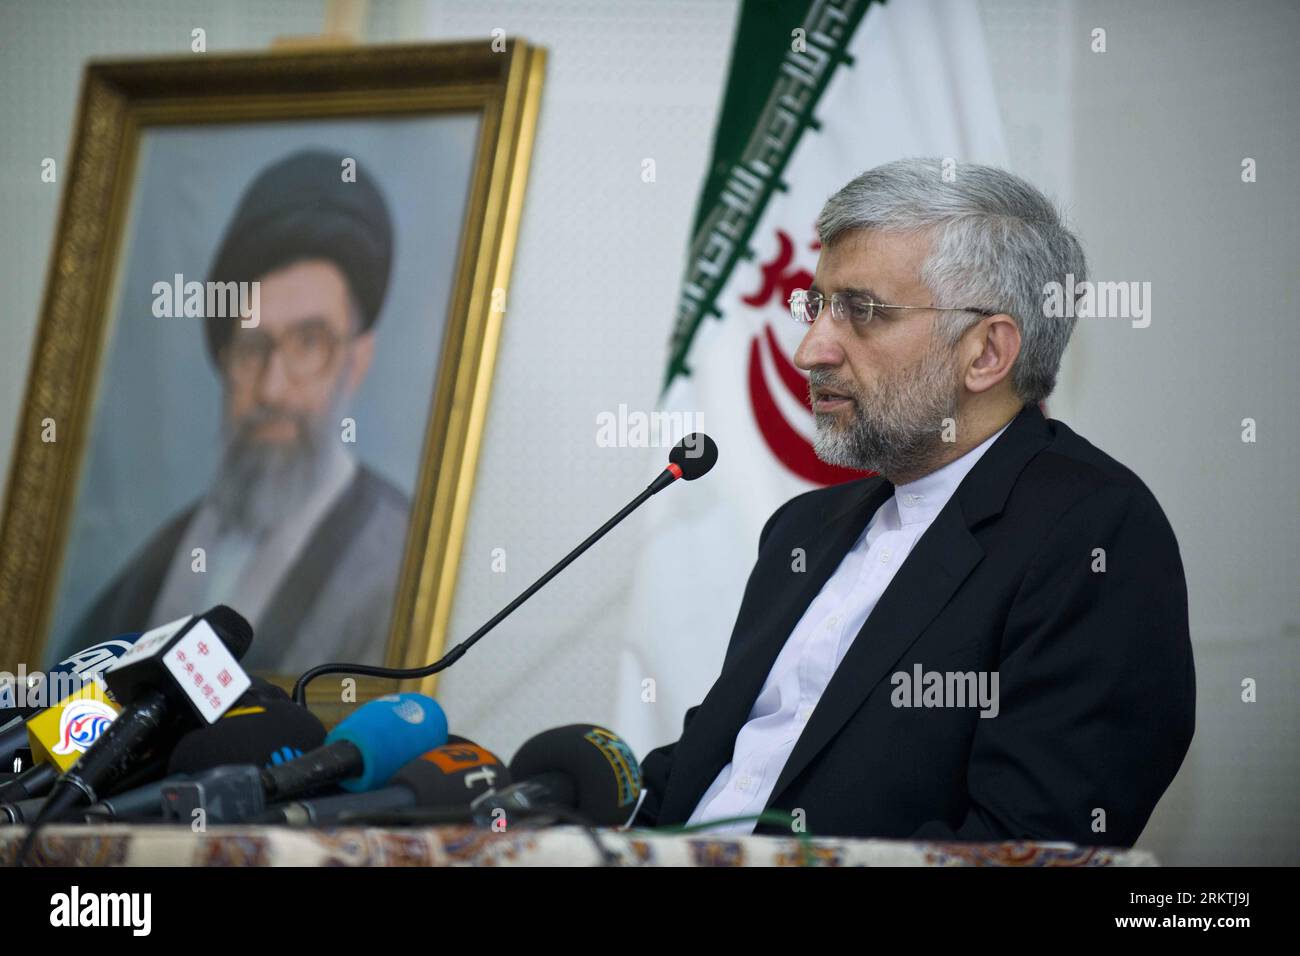 Bildnummer : 58492060 Datum : 19.09.2012 Copyright : imago/Xinhua (120919) -- ISTANBUL, 19 septembre 2012 (Xinhua) -- le négociateur nucléaire iranien Saeed Jalili prend la parole lors d'une conférence de presse au consulat général iranien à Istanbul en Turquie, le 19 septembre 2012. Saeed Jalili a déclaré ici mercredi que l'Iran et l'Union européenne (UE) ont convenu de tenir un nouveau cycle de négociations nucléaires dans un avenir proche. (Xinhua/Ma Yan)(yby) TURQUIE-ISTANBUL-IRAN-NUCLEAR-eu PUBLICATIONxNOTxINxCHN Politik People Chefunterhändler Unterhändler Atomgespräche Atom Gespräche xas x0x Porträt premiumd 2012 quer 58492060 Banque D'Images